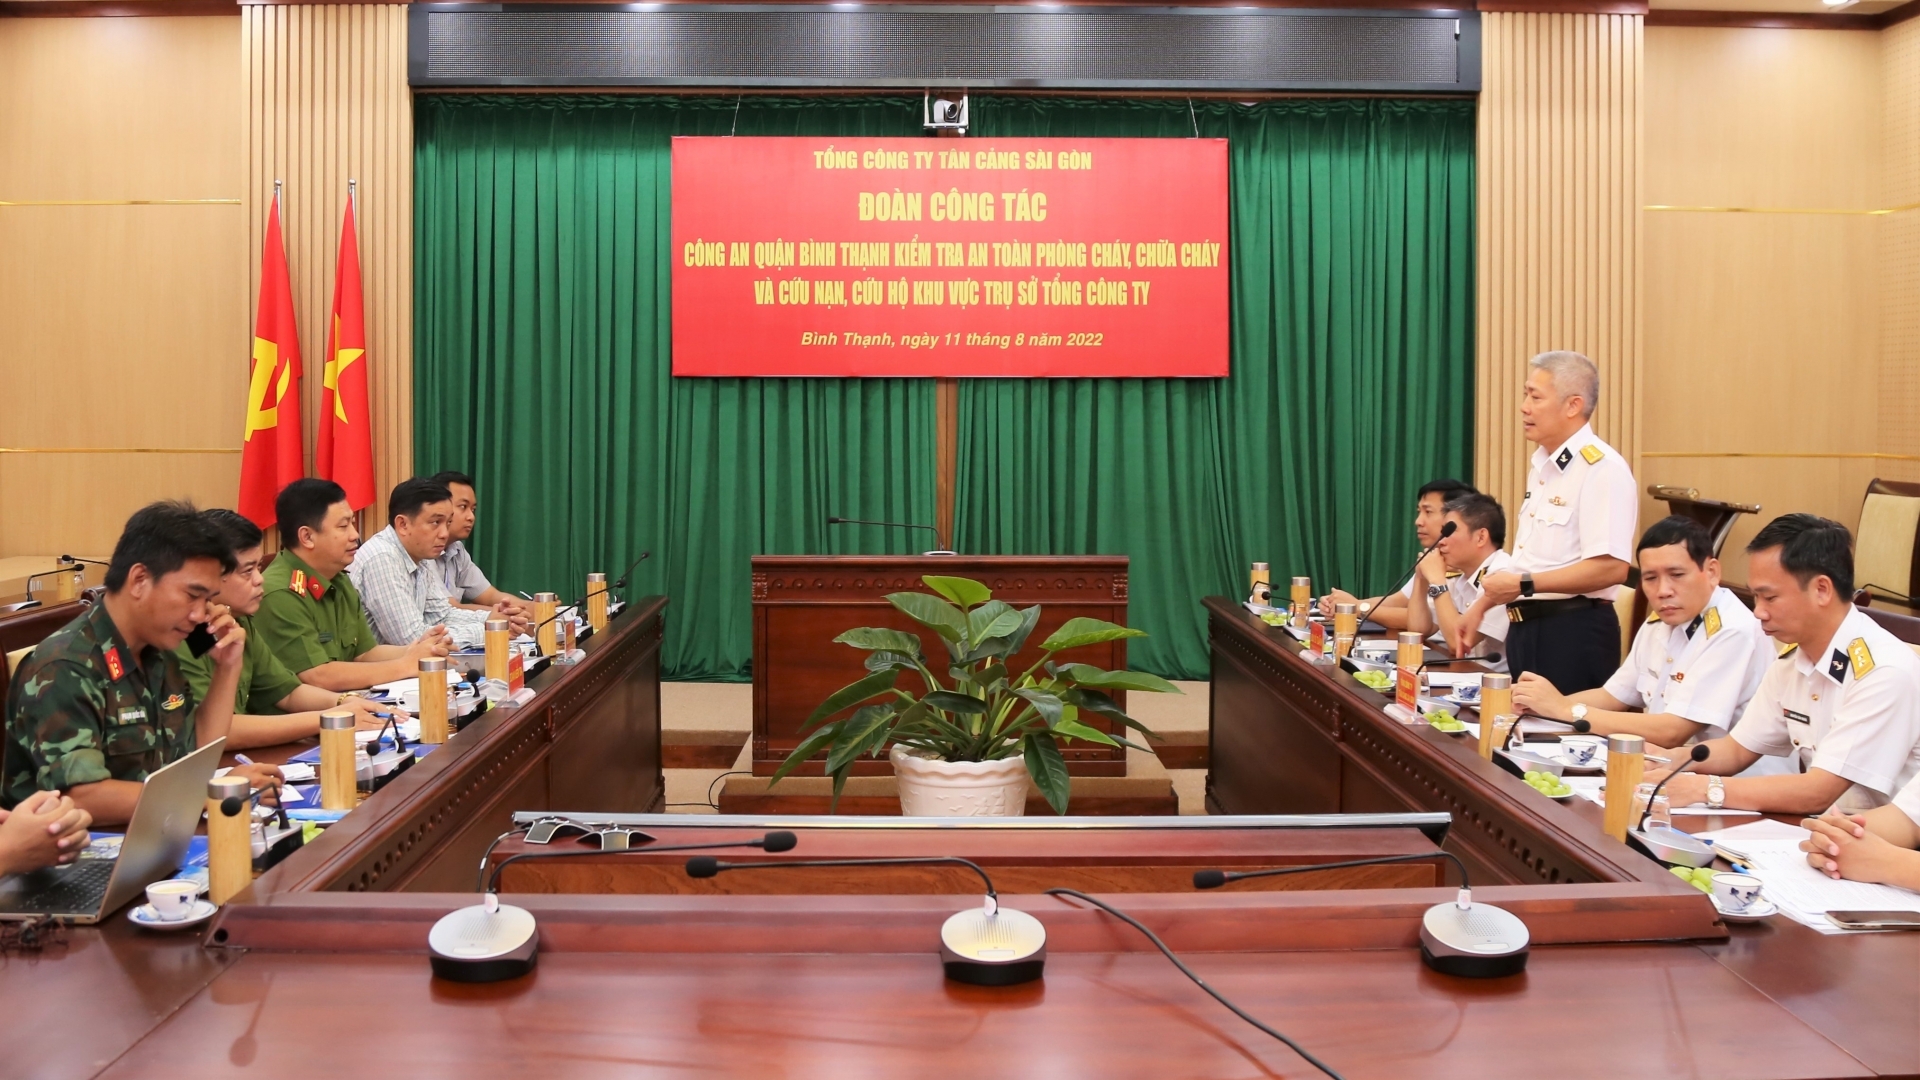 Tân Cảng Sài Gòn đề xuất hỗ trợ công tác huấn luyện PCCC cho người lao động